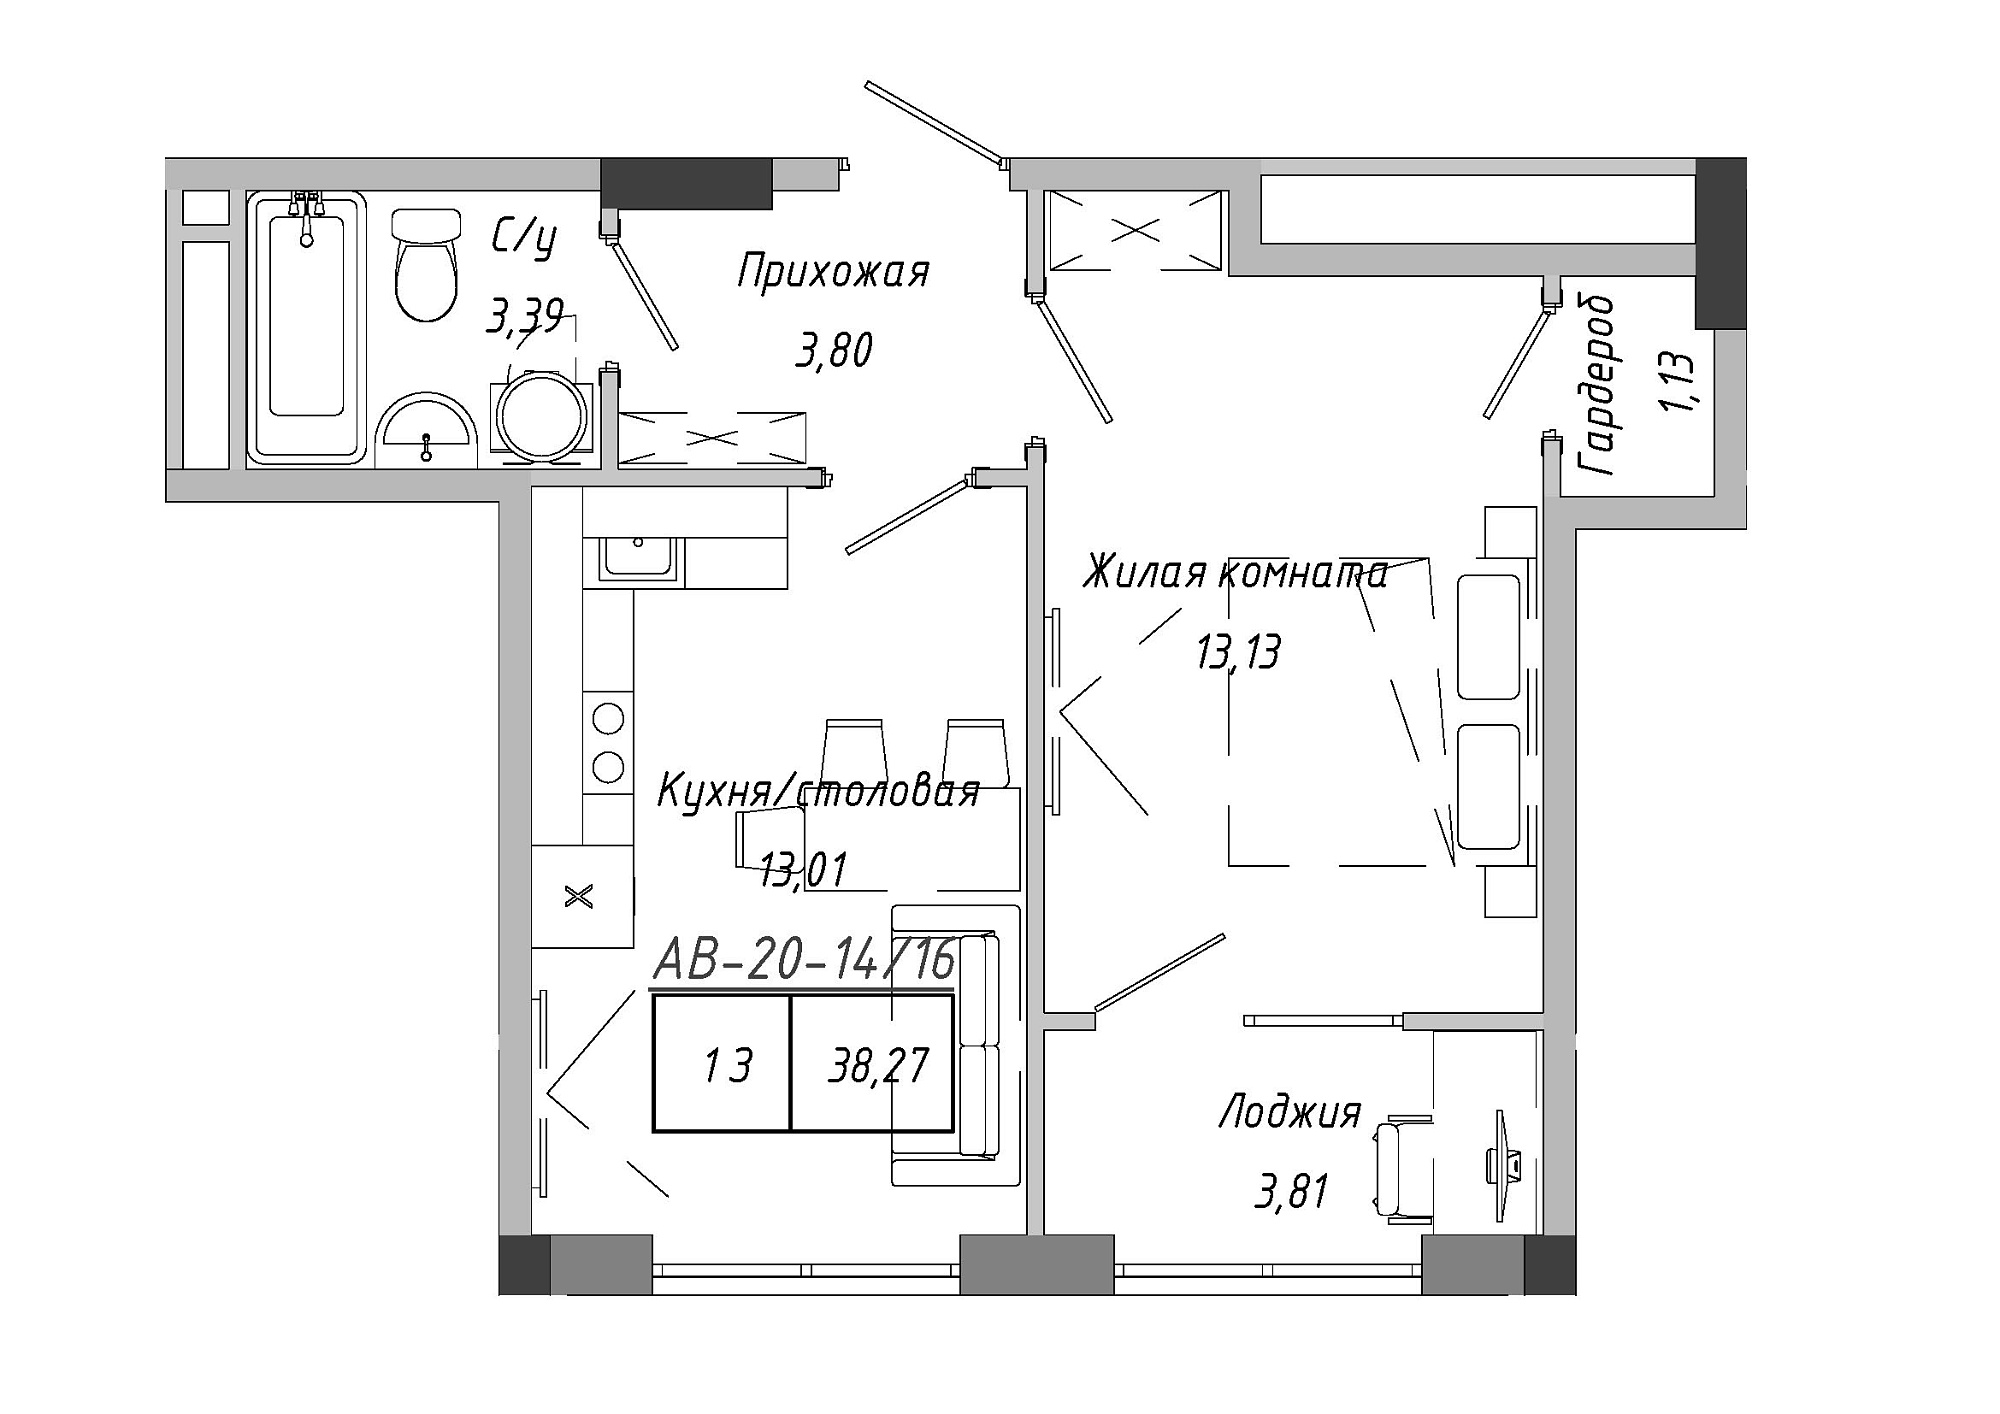 Планировка 1-к квартира площей 38.27м2, AB-20-14/00116.